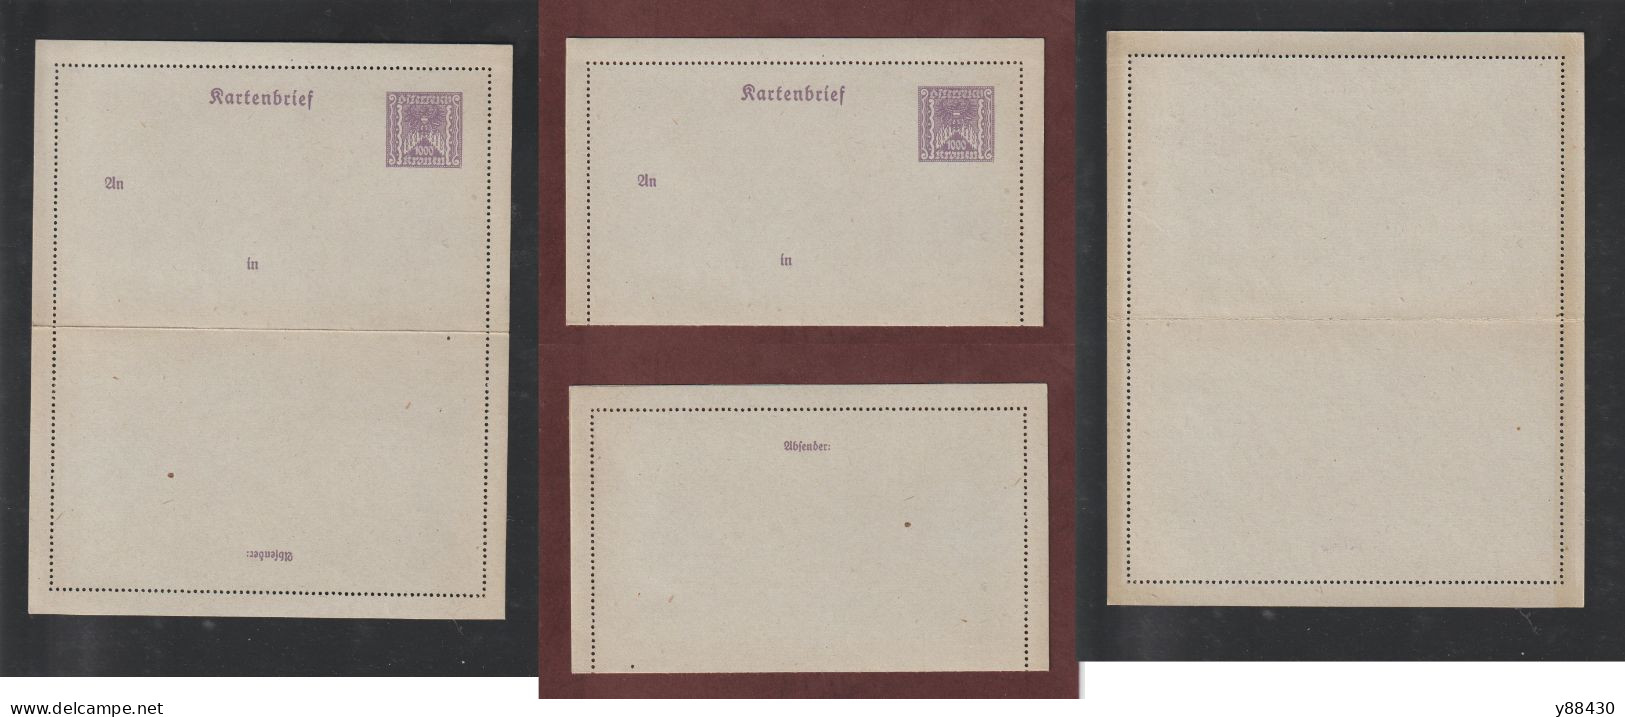 AUTRICHE - Entier Postal Neuf - 1910/1930 - Entier Sur Carte Lettre Gommé  - 1000k. Violet  - 5 Scan - Kartenbriefe